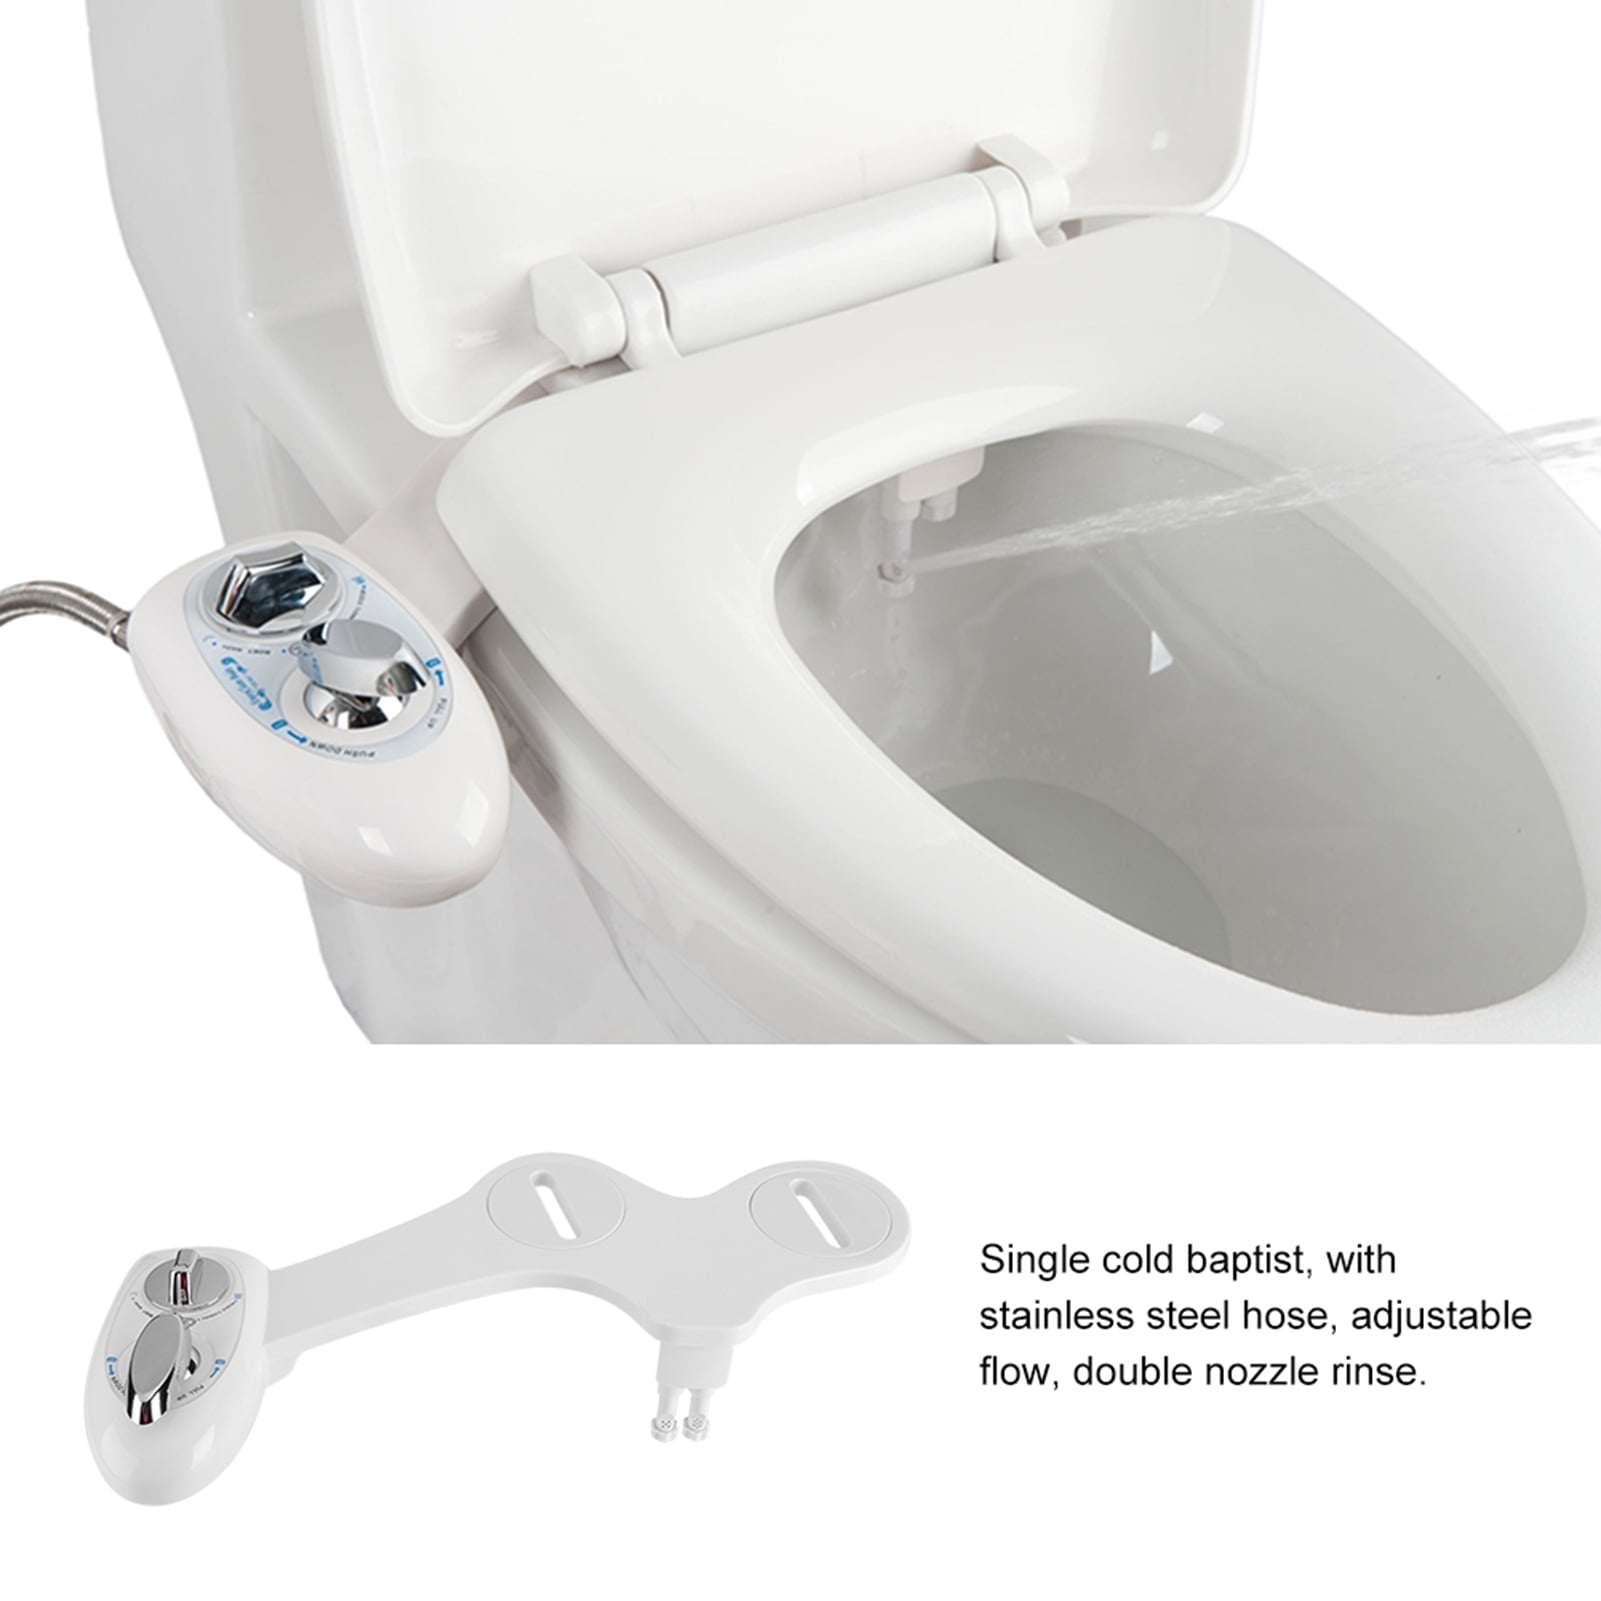 Details about   Non-Electric Fresh Water Sprayer Toilet Seat Attachment Bathroom Bidet Sprayer 